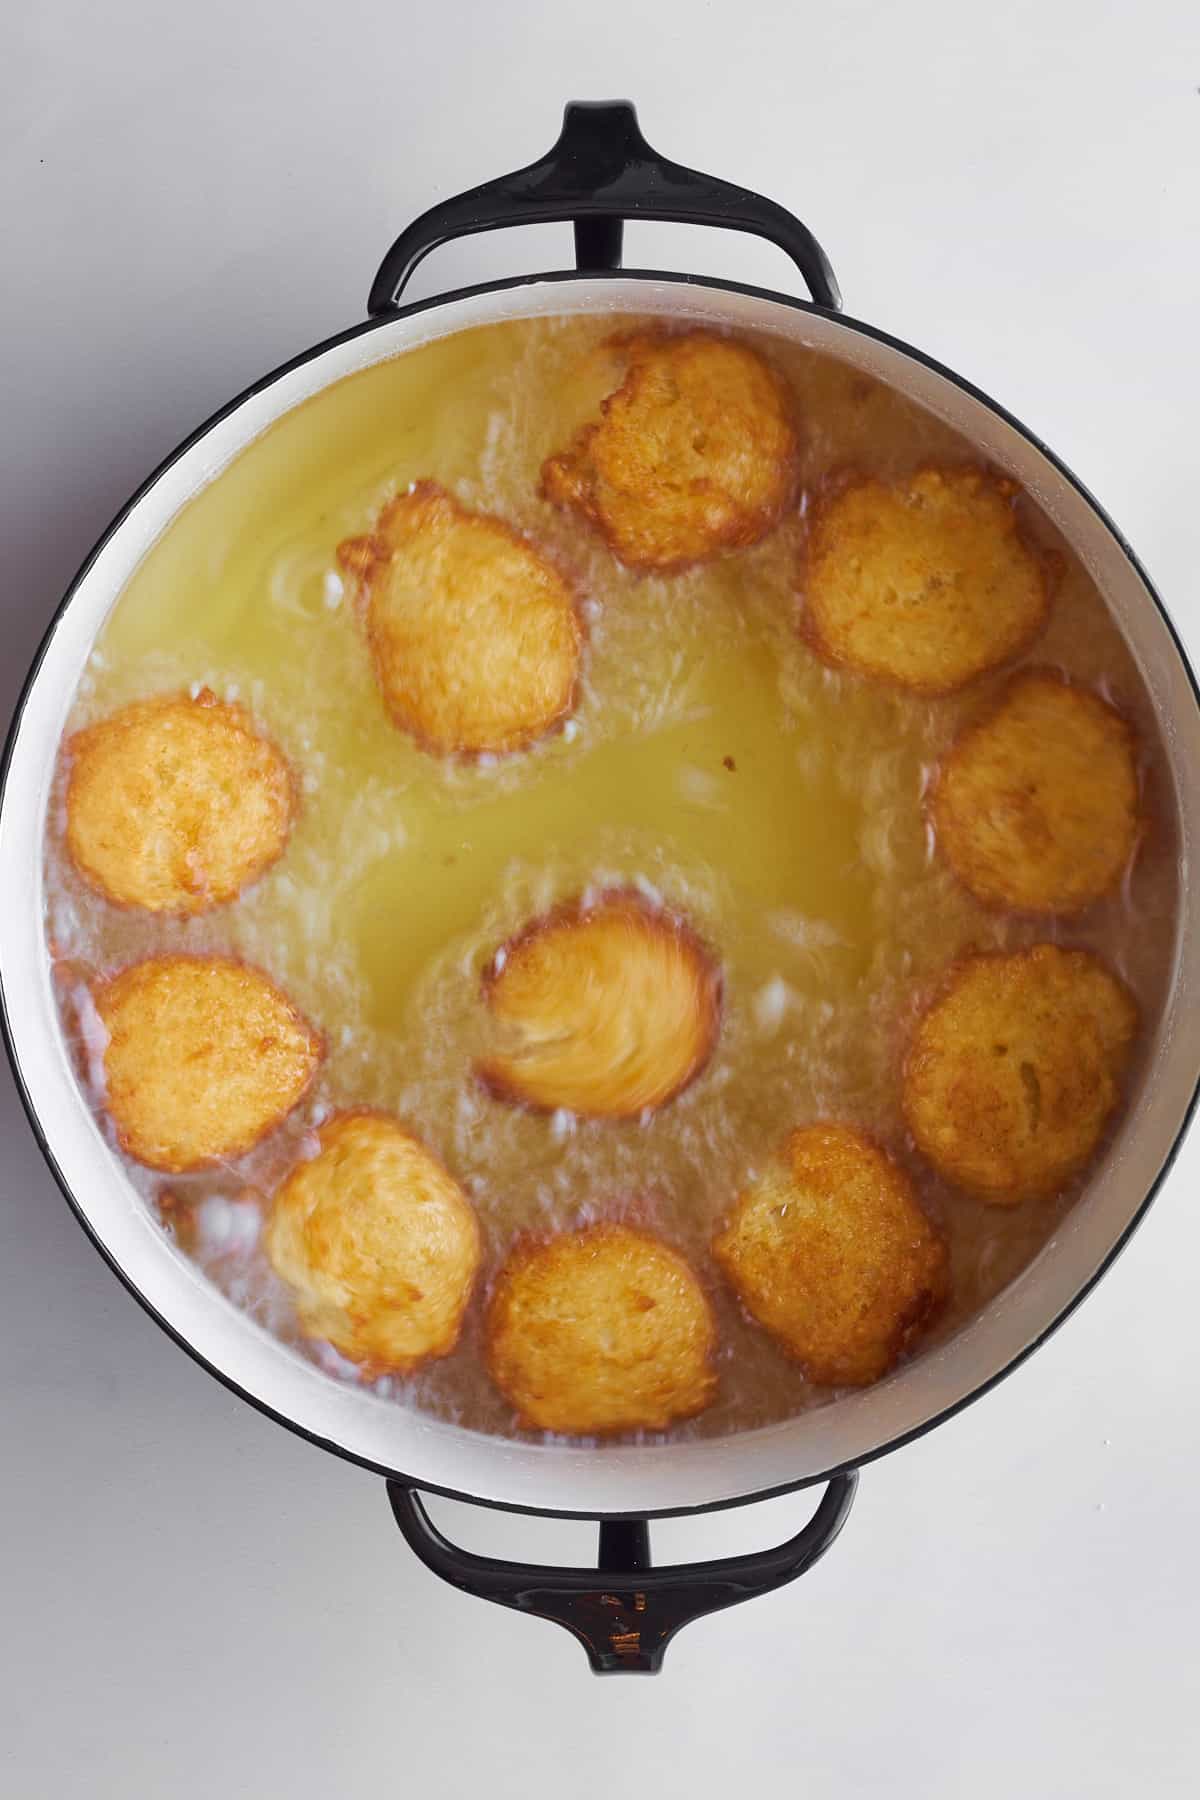 Zeppole donuts frying in a pot. 